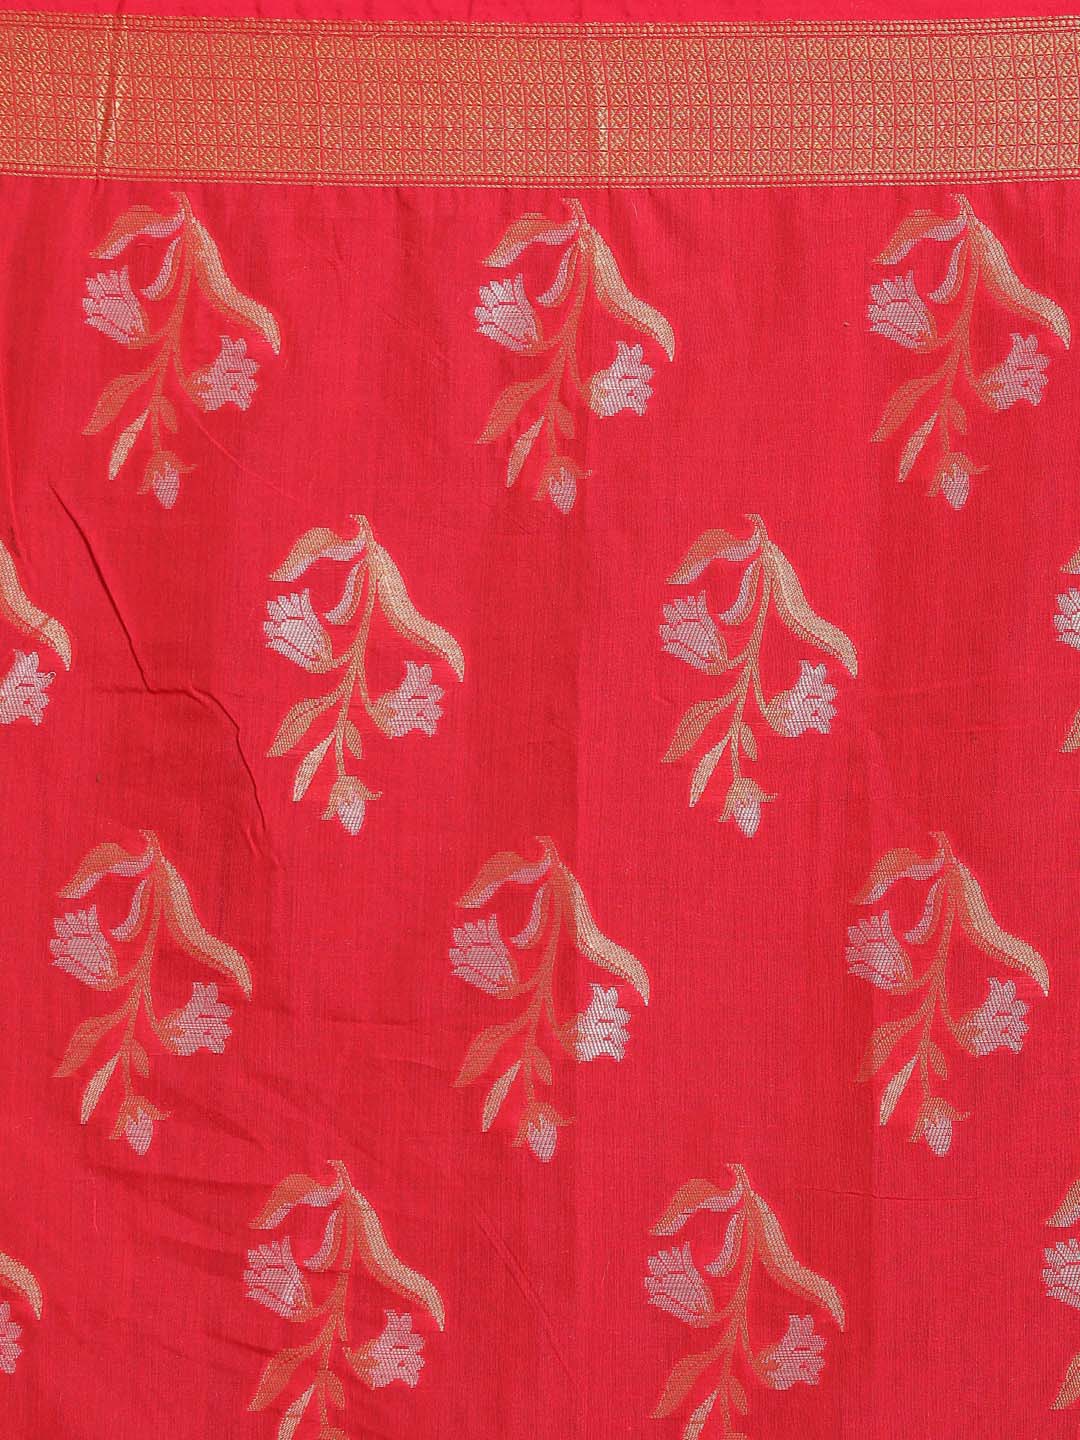 Indethnic Banarasi Magenta Woven Design Daily Wear Saree - Saree Detail View